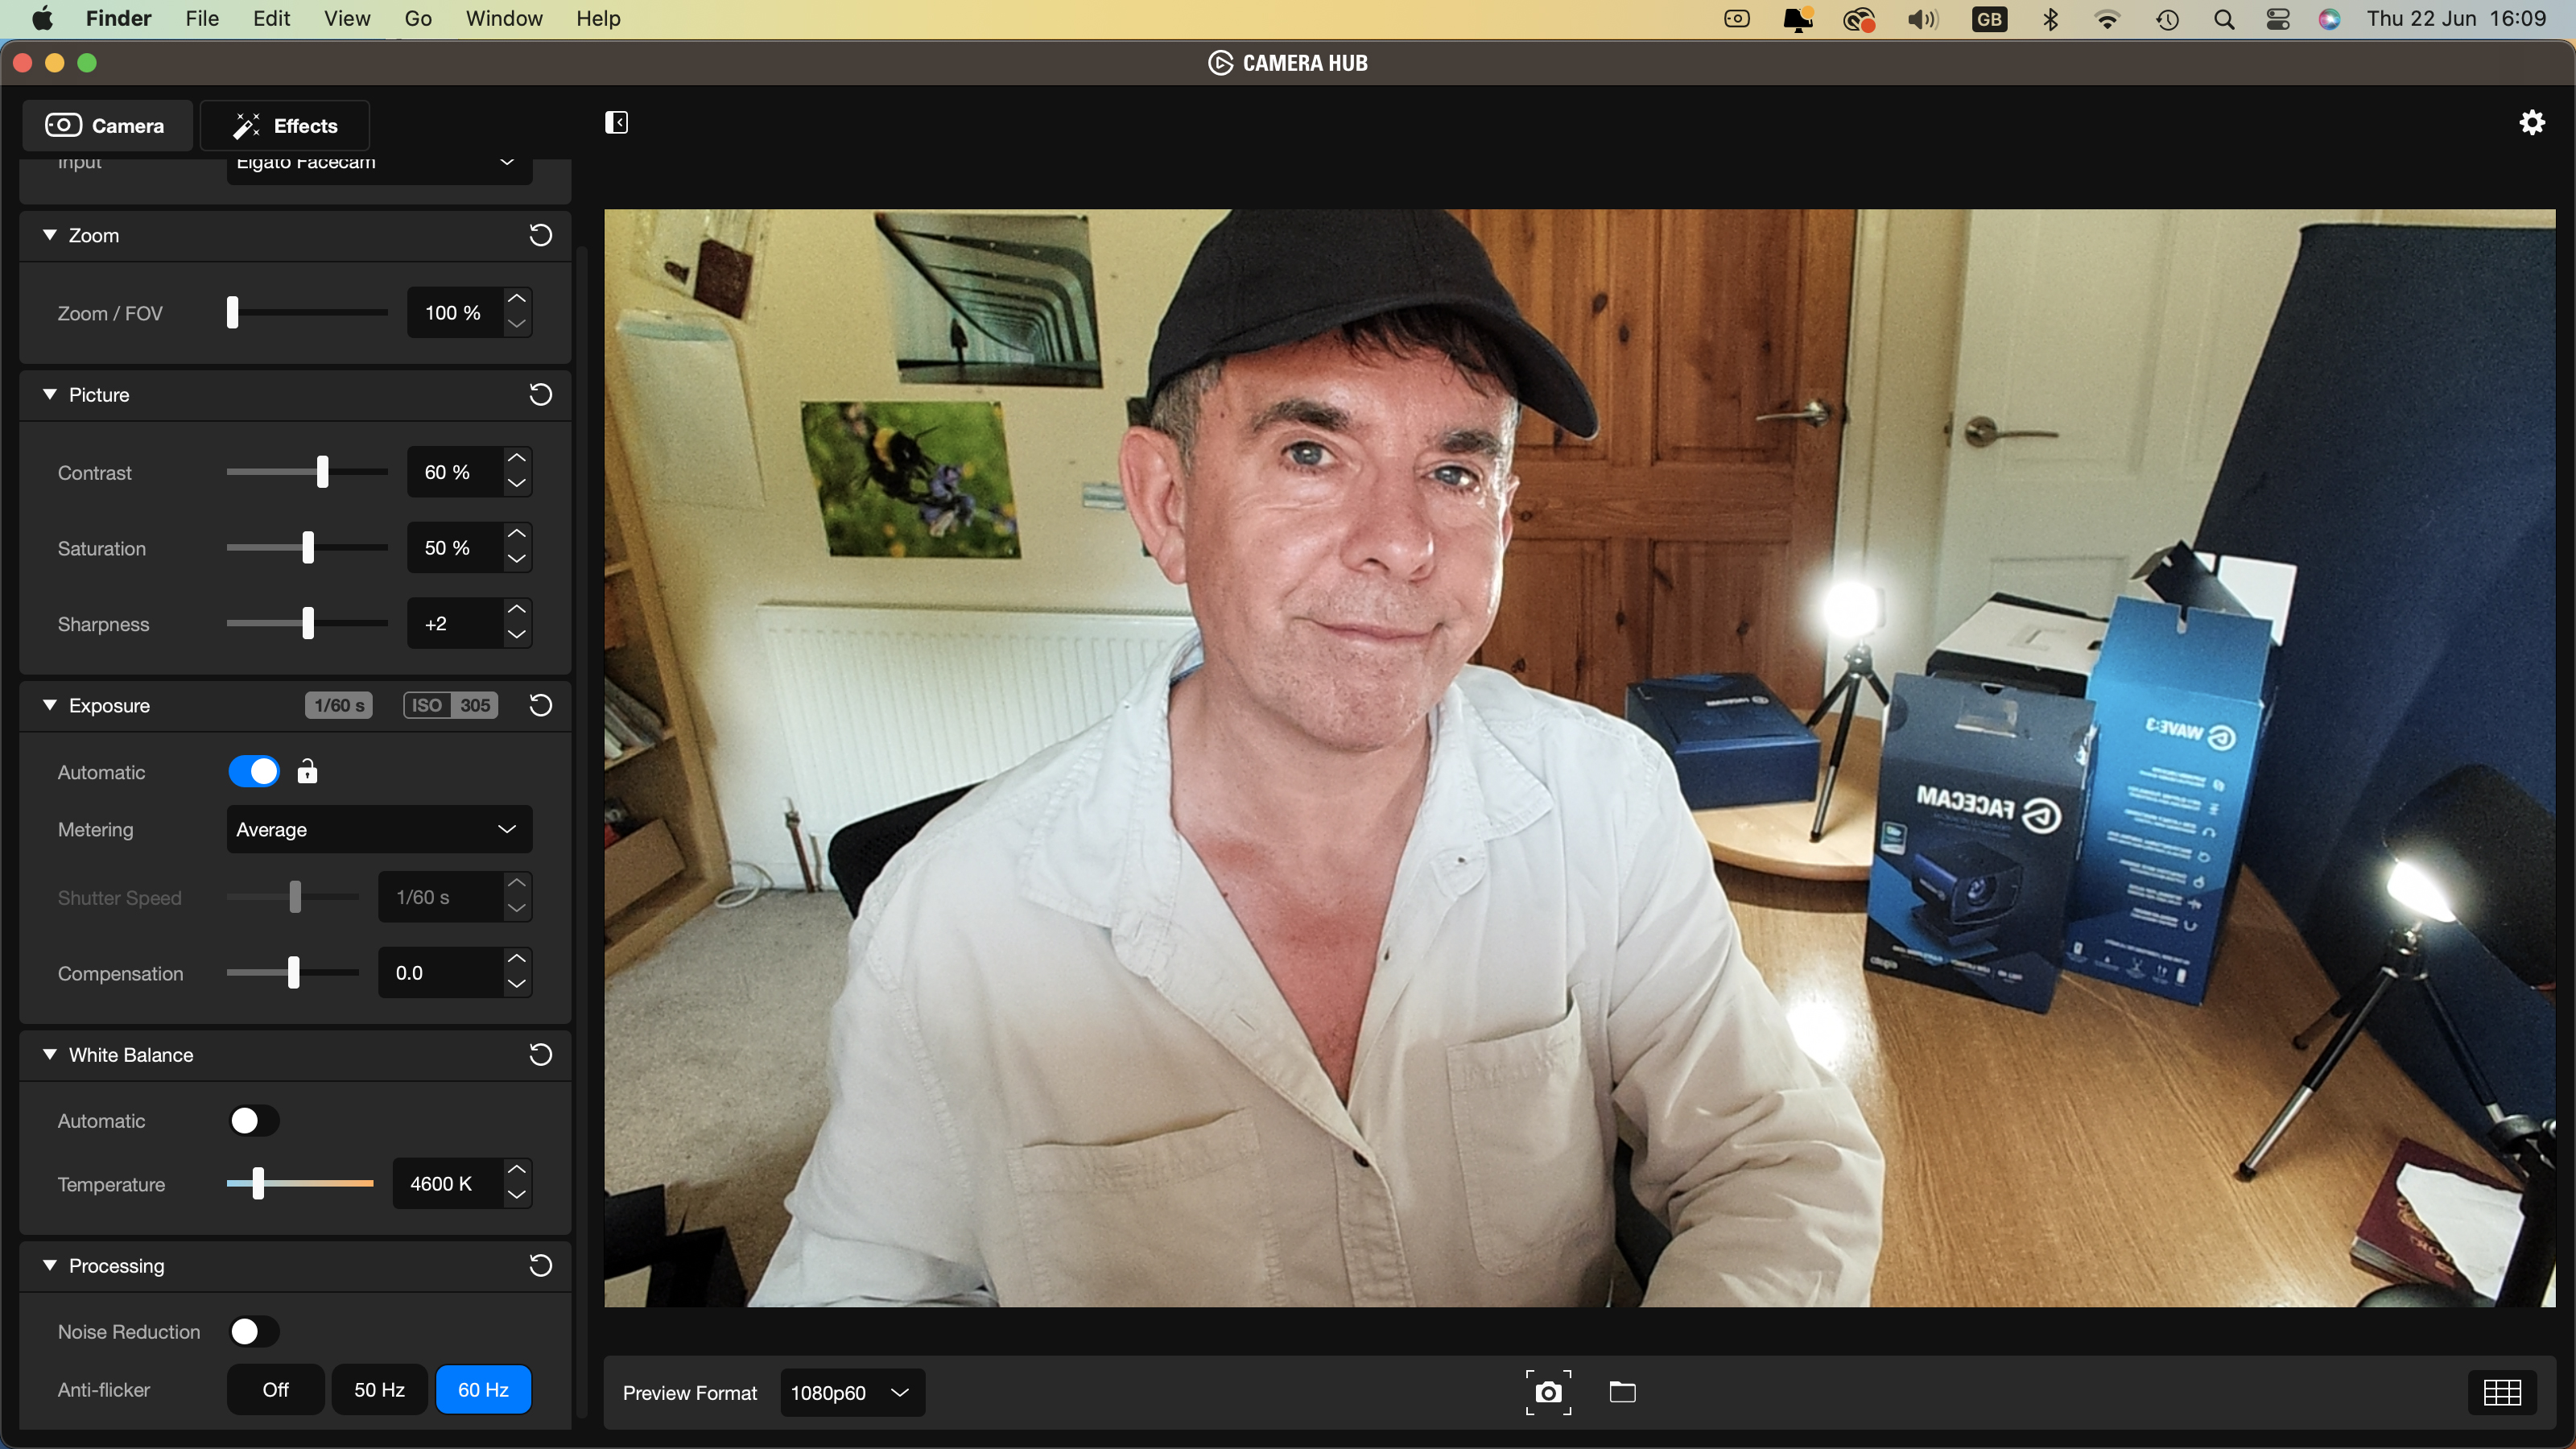 Image de revue d'Elgato Facecam montrant le critique renommé, George Cairns, vu à travers la webcam du Camera Hub.